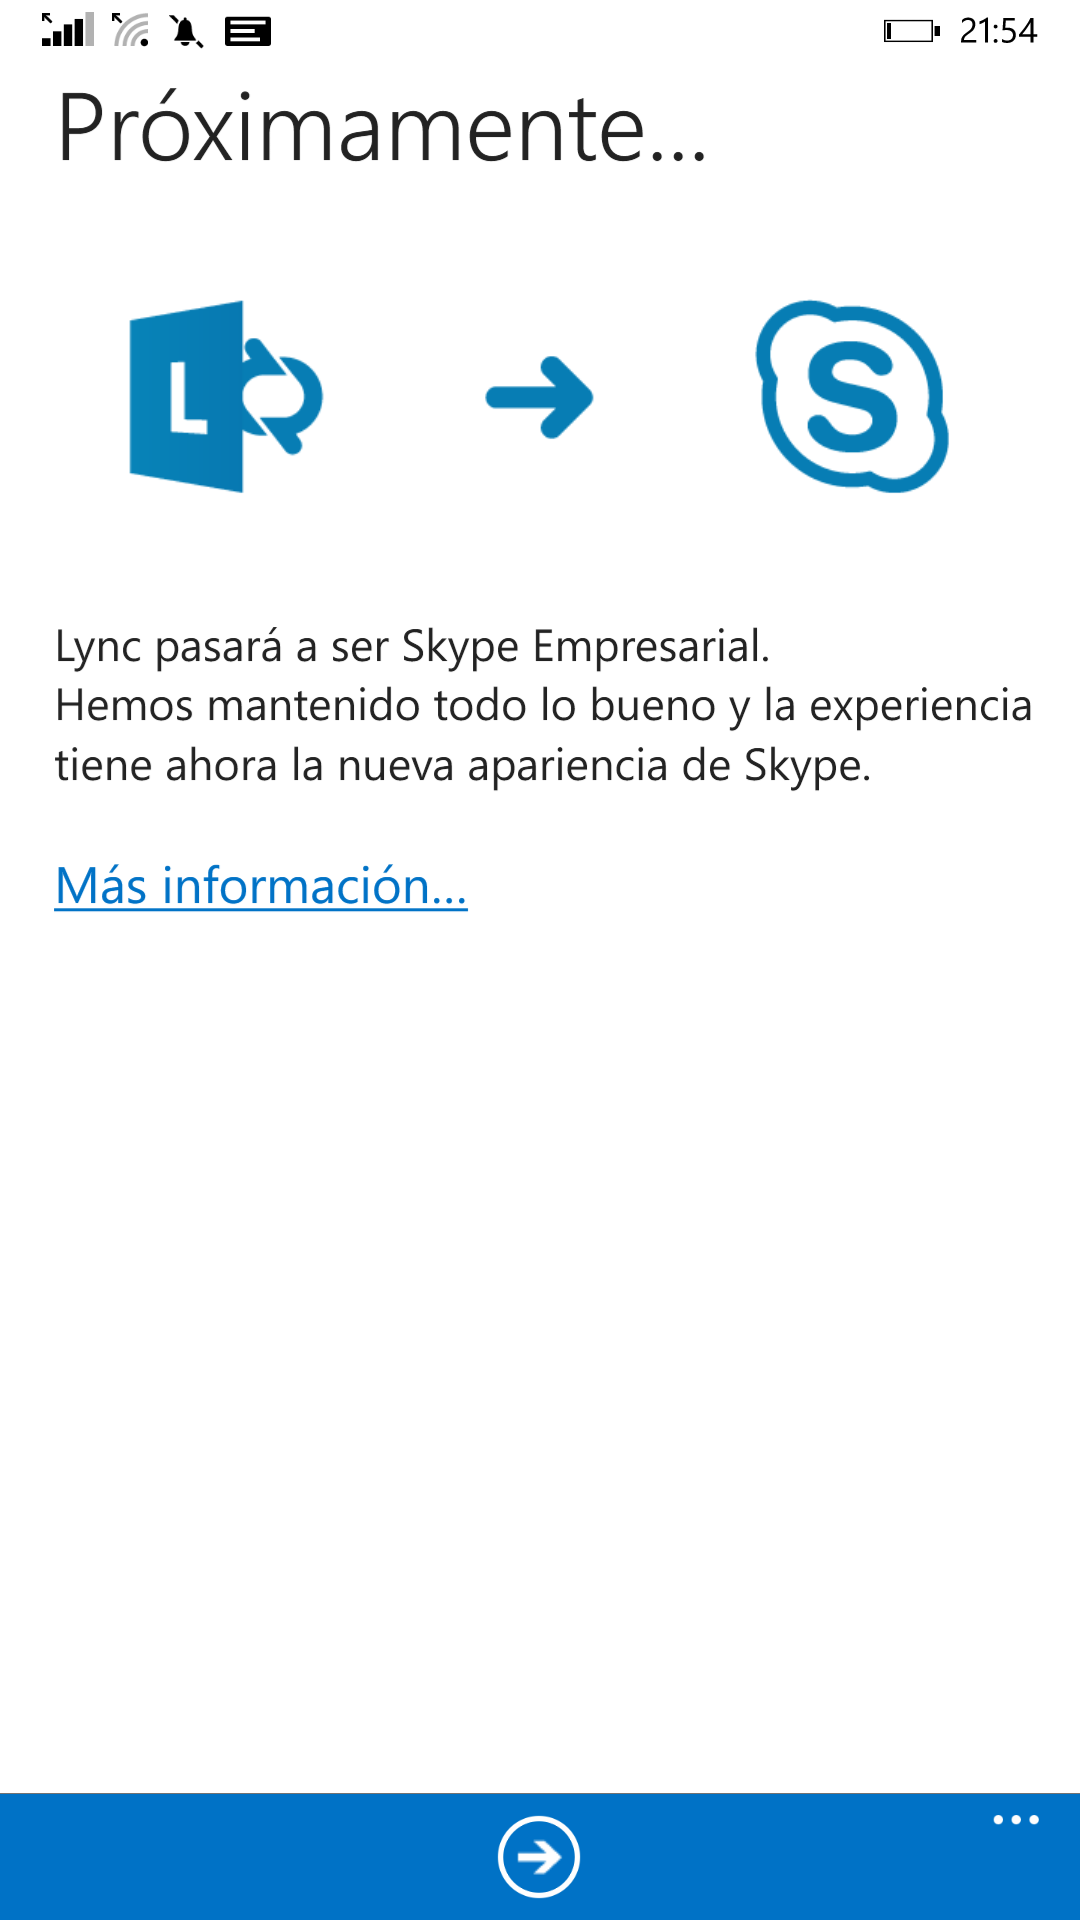 Transición de Lync a Skype Empresarial